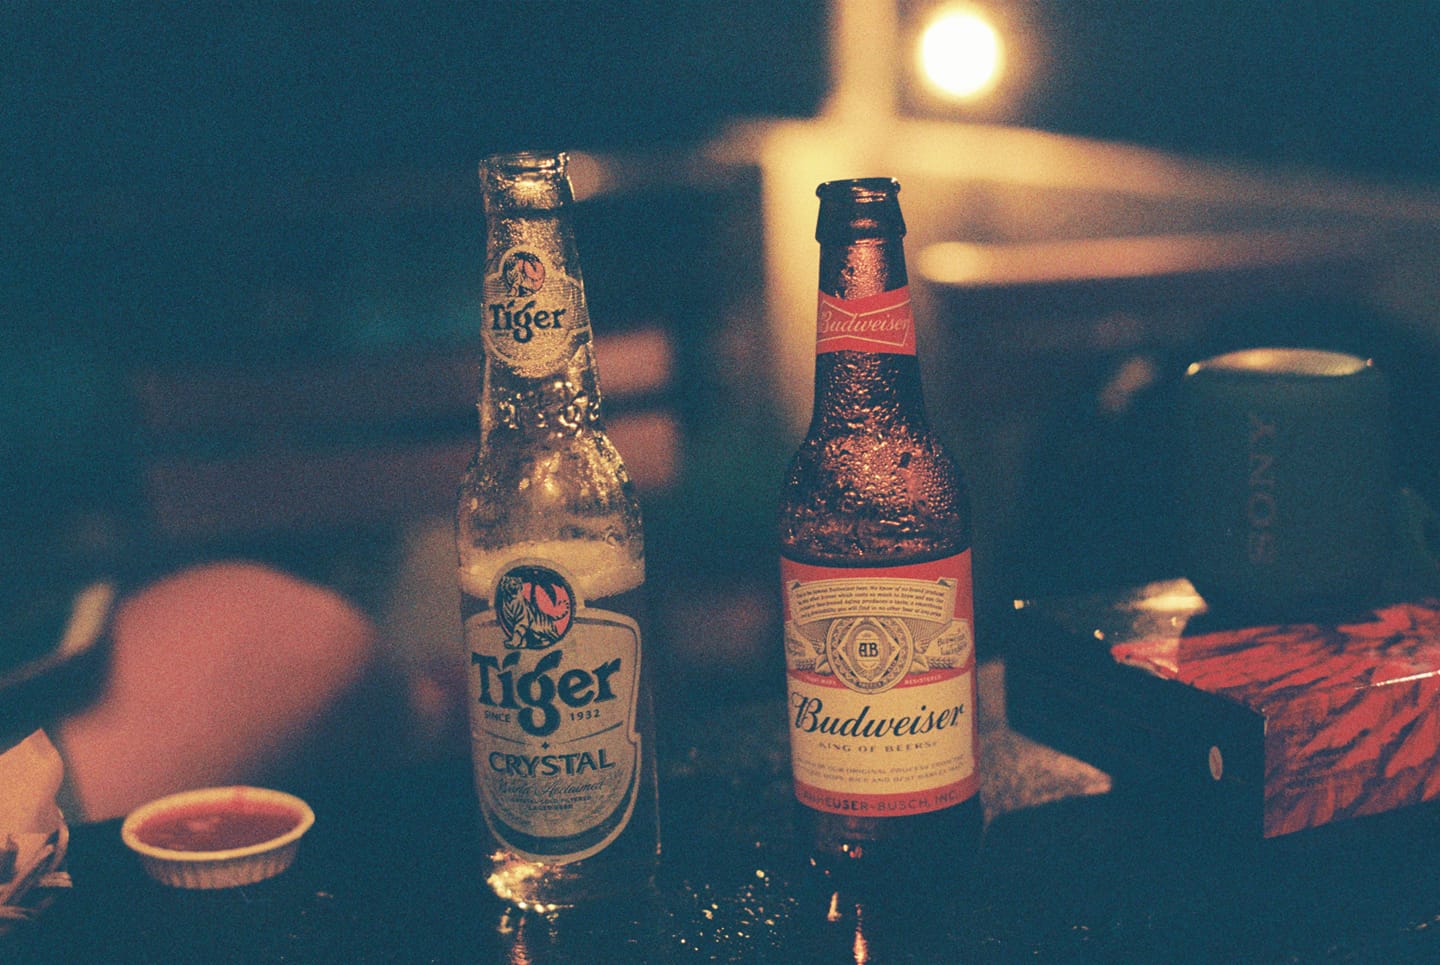 Bia Sài Gòn: Cùng nhau thưởng thức hương vị đặc trưng của Bia Sài Gòn - món ăn uống không thể thiếu khi đến Việt Nam. Hãy đón xem hình ảnh tuyệt đẹp của ly bia Sài Gòn đầy màu sắc và hấp dẫn này.